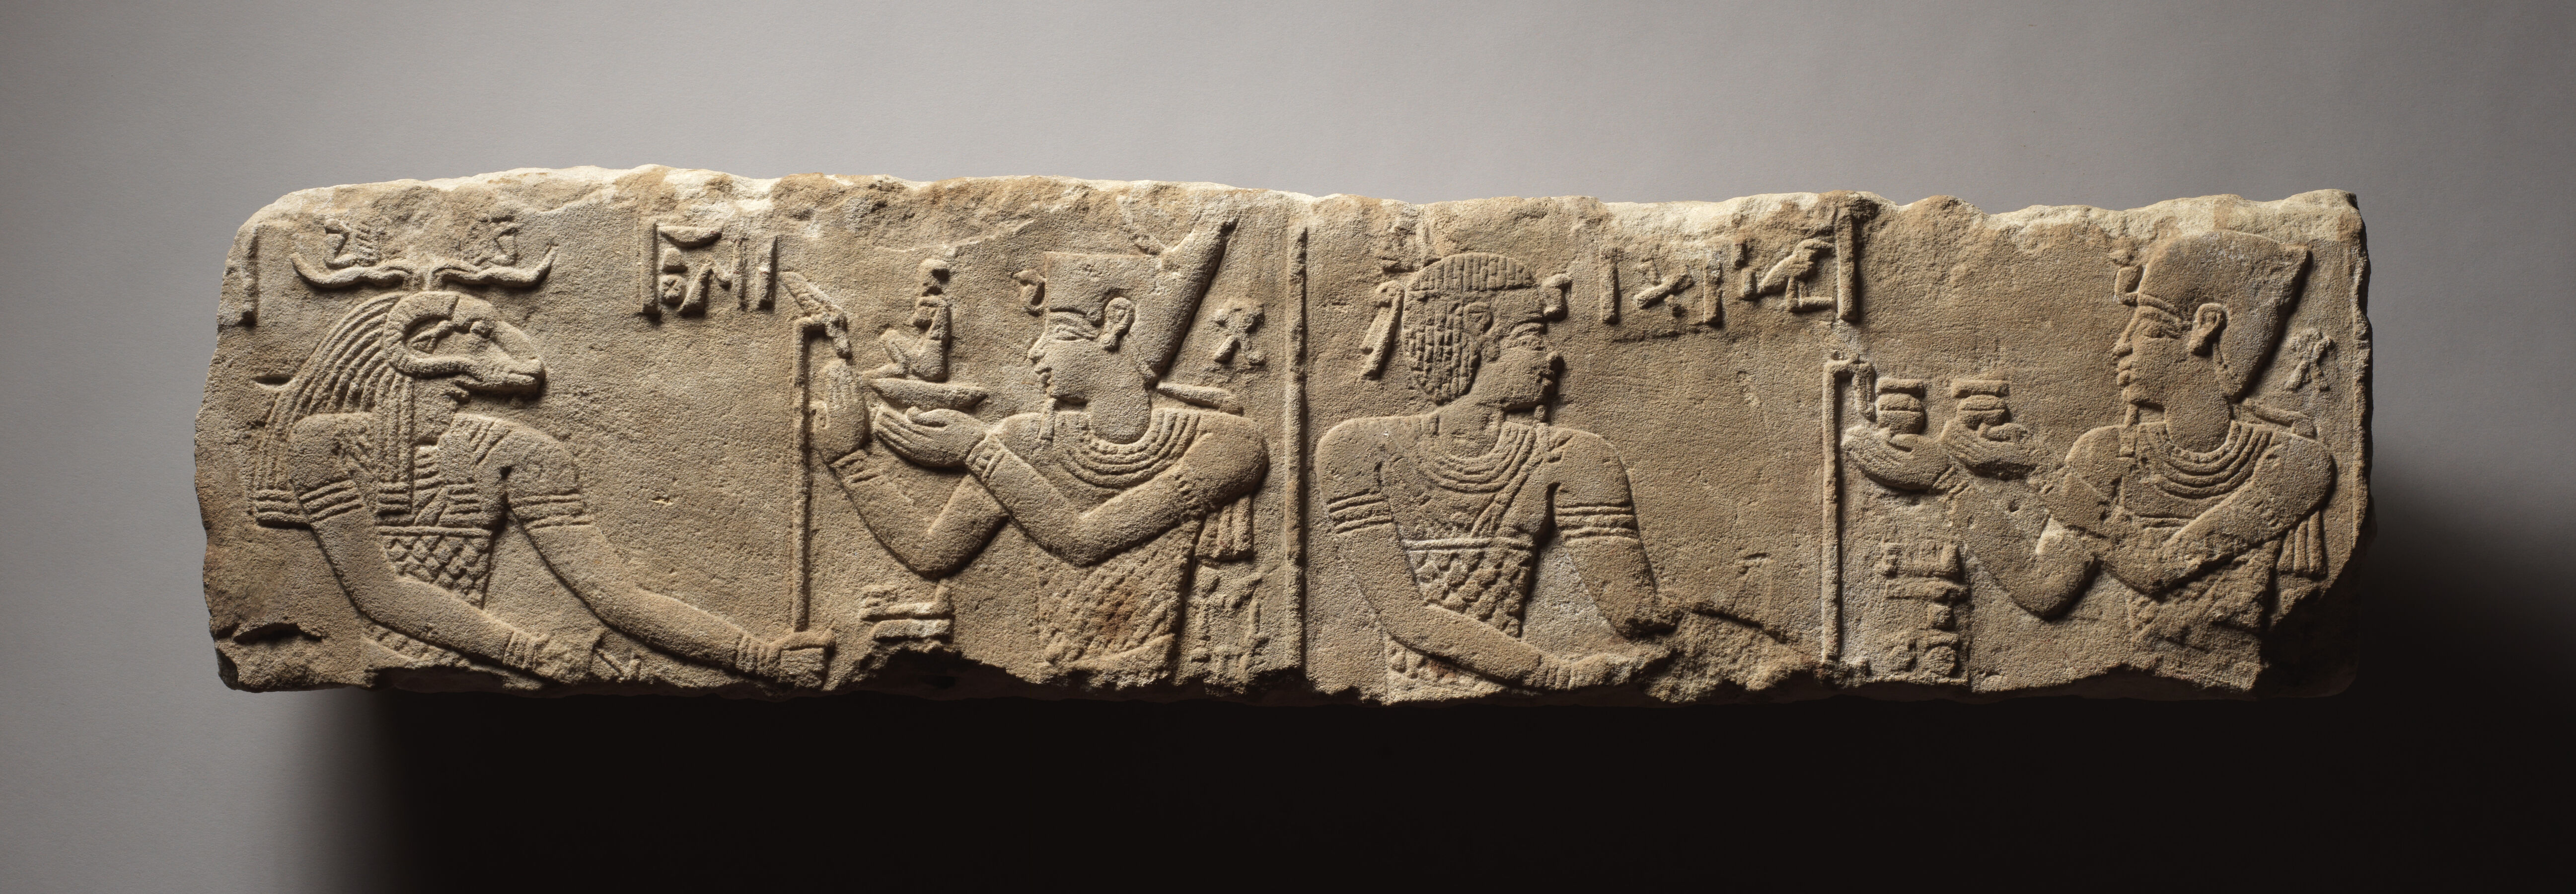 Relief of King Offering to Deities